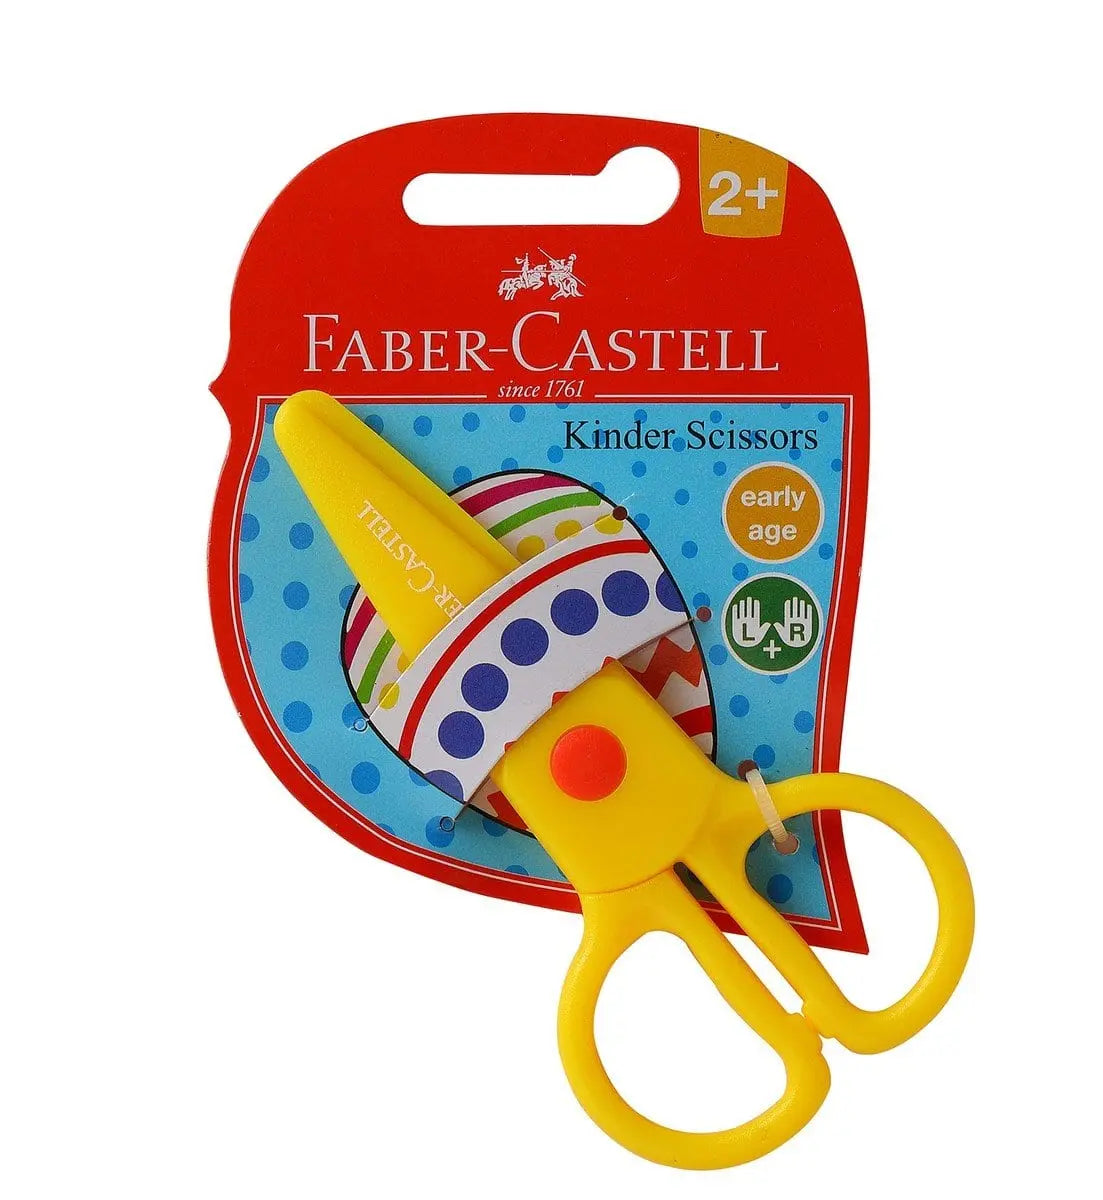 FABER-CASTELL KINDER SCISSORS Faber-Castell